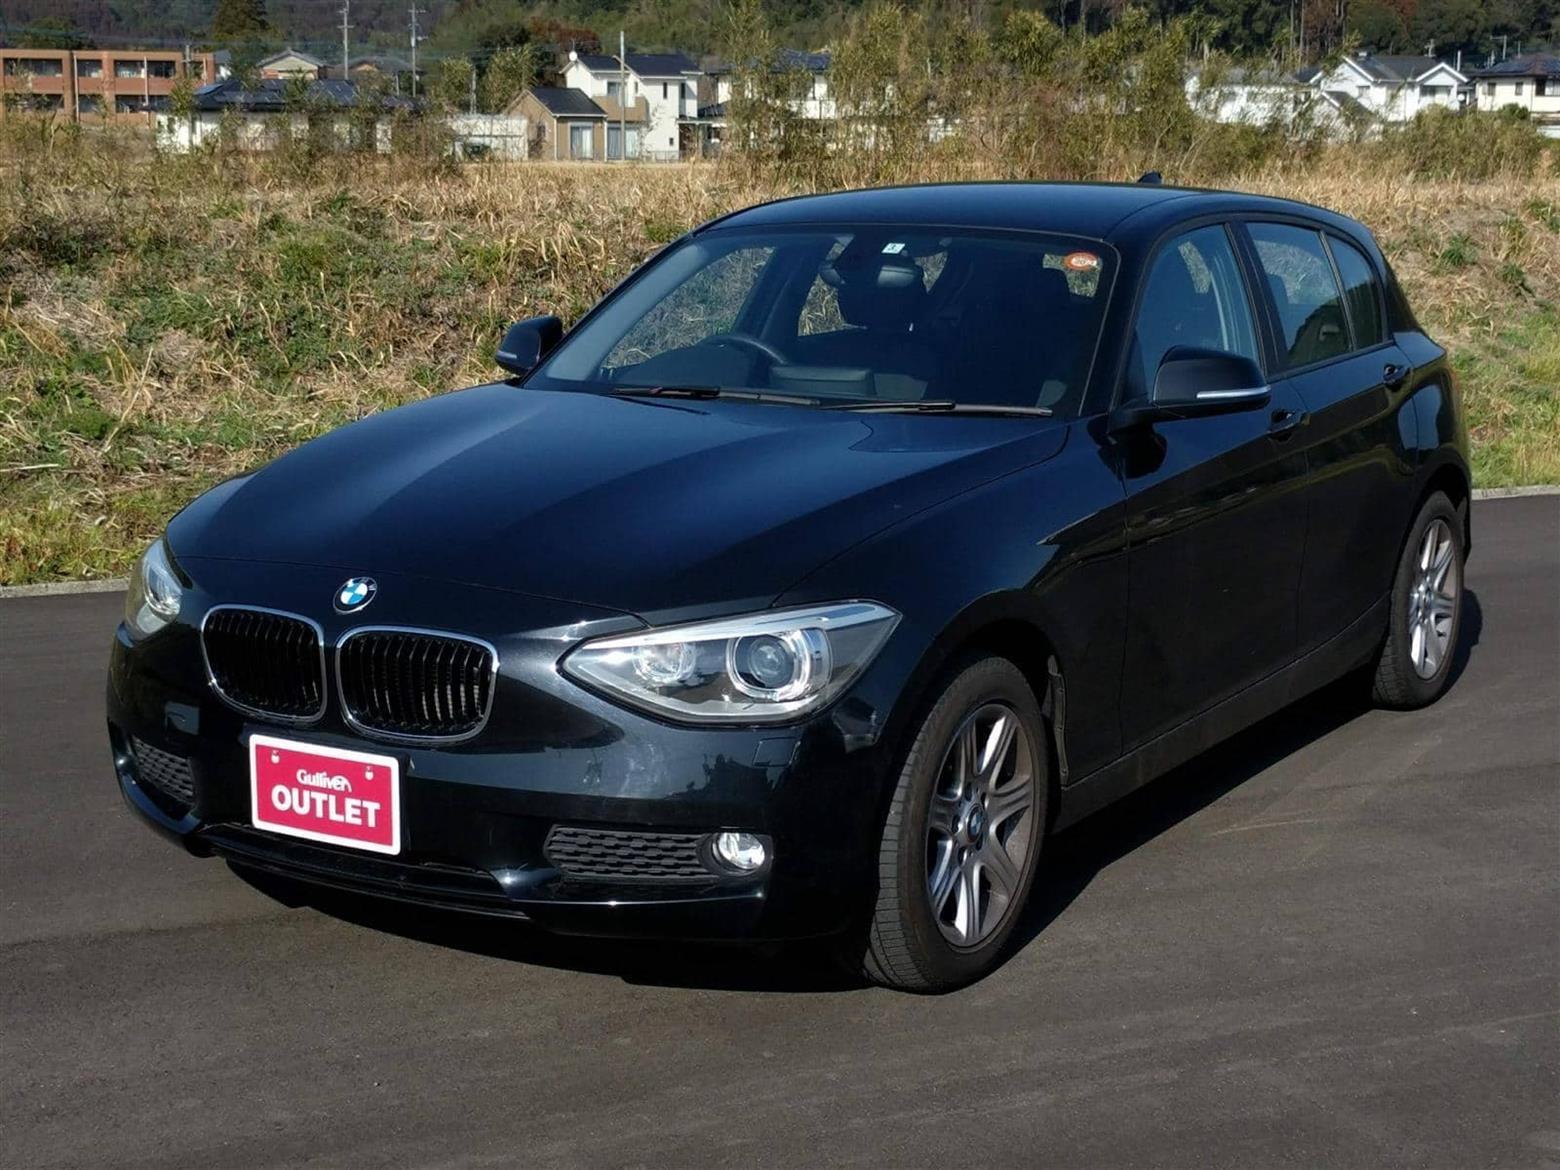 BMW,1シリーズ,116i,2014年式(平成26年式),黒,ID52374518 中古車検索のガリバー